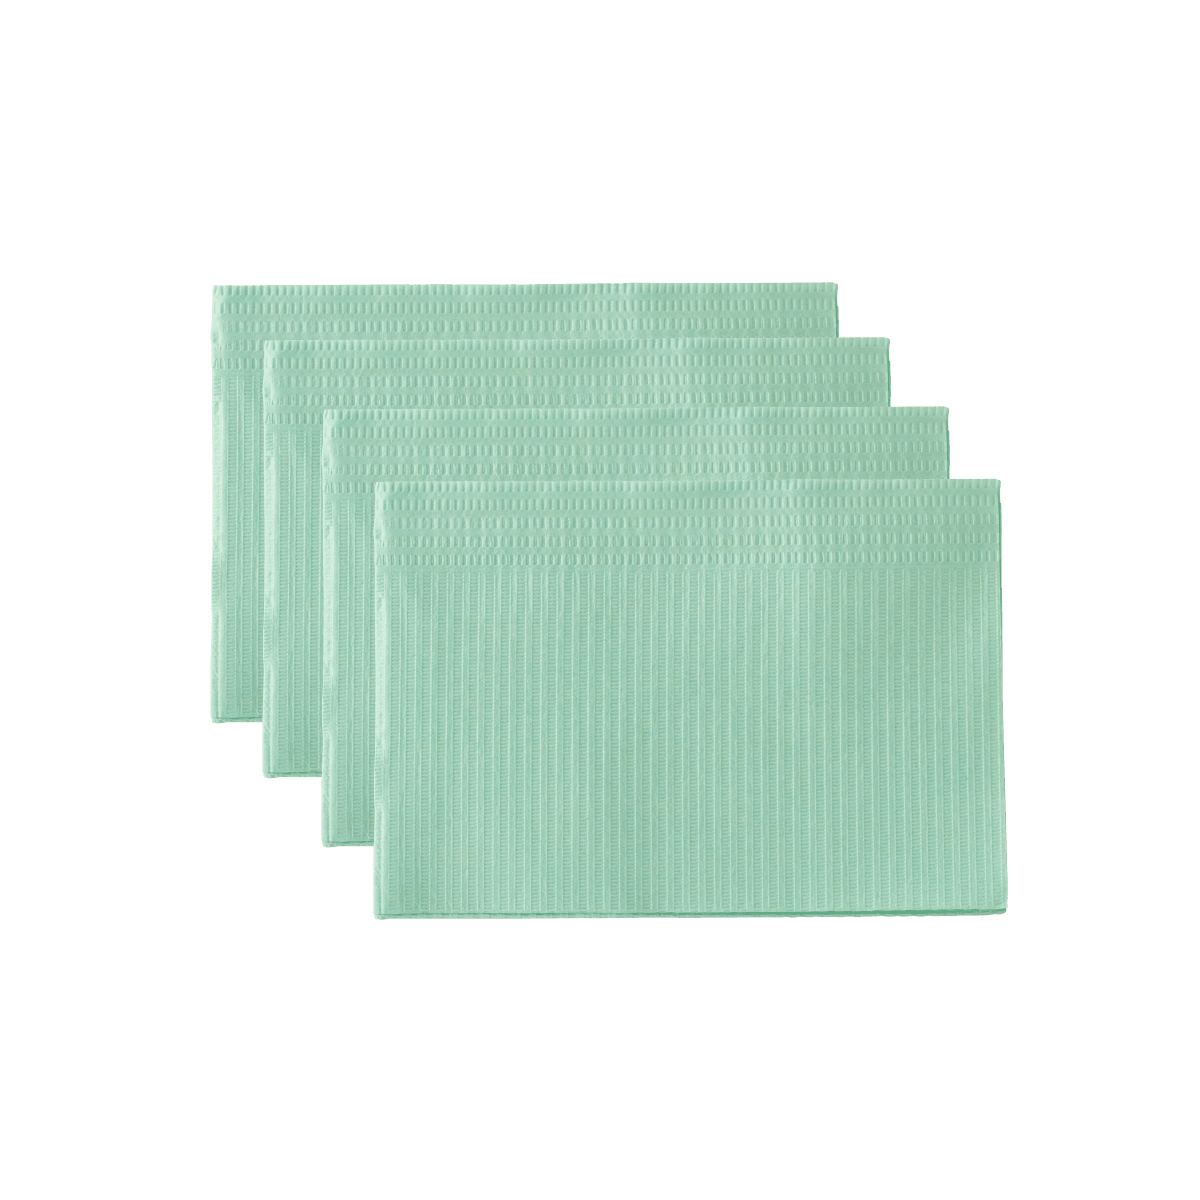 Monoart Patientenservietten Towel UP Farbe: mintgrün (Euronda)